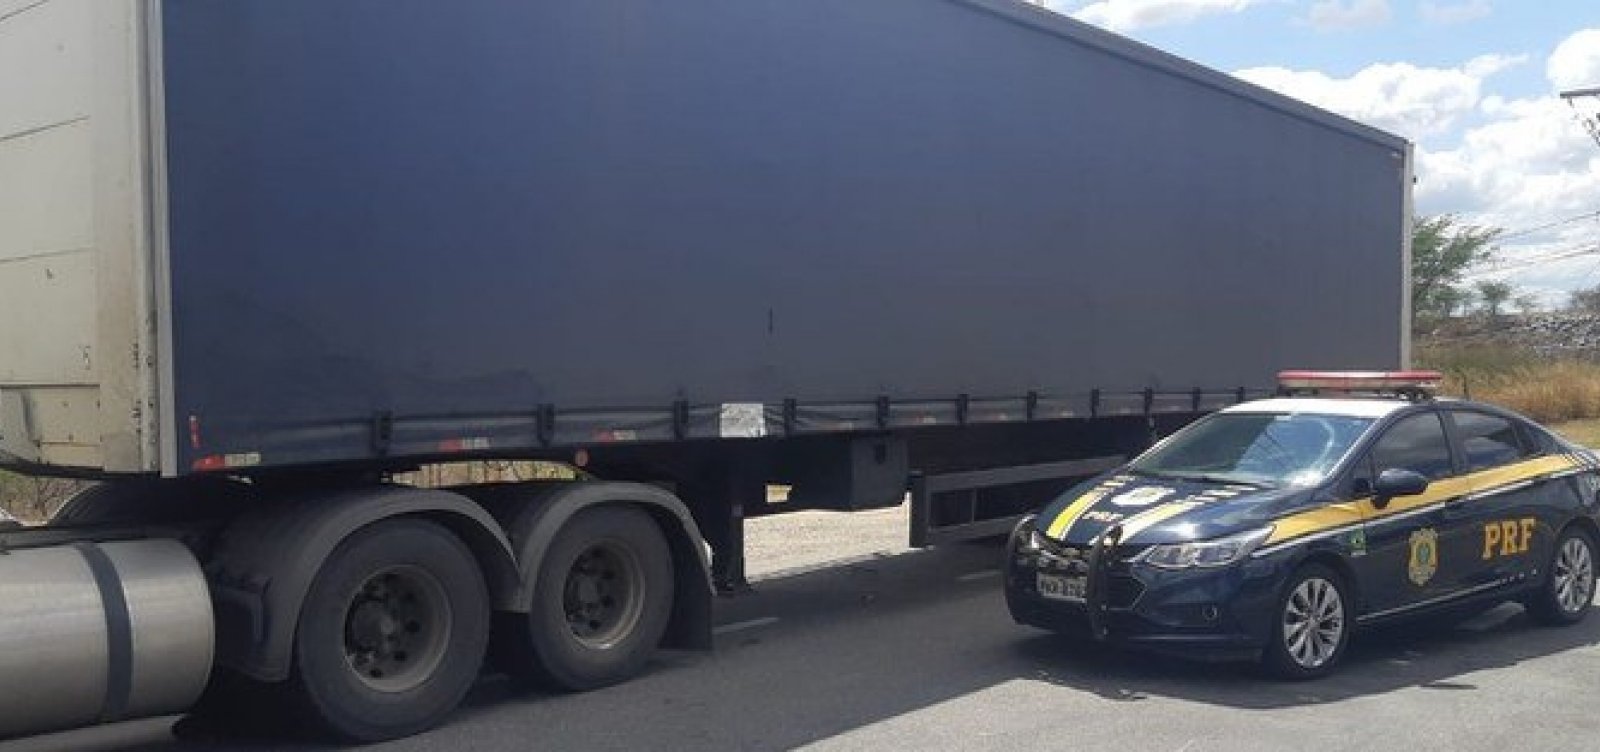 Polícias Militar e Rodoviária encerram bloqueios dos caminhoneiros e liberam rodovias na Bahia